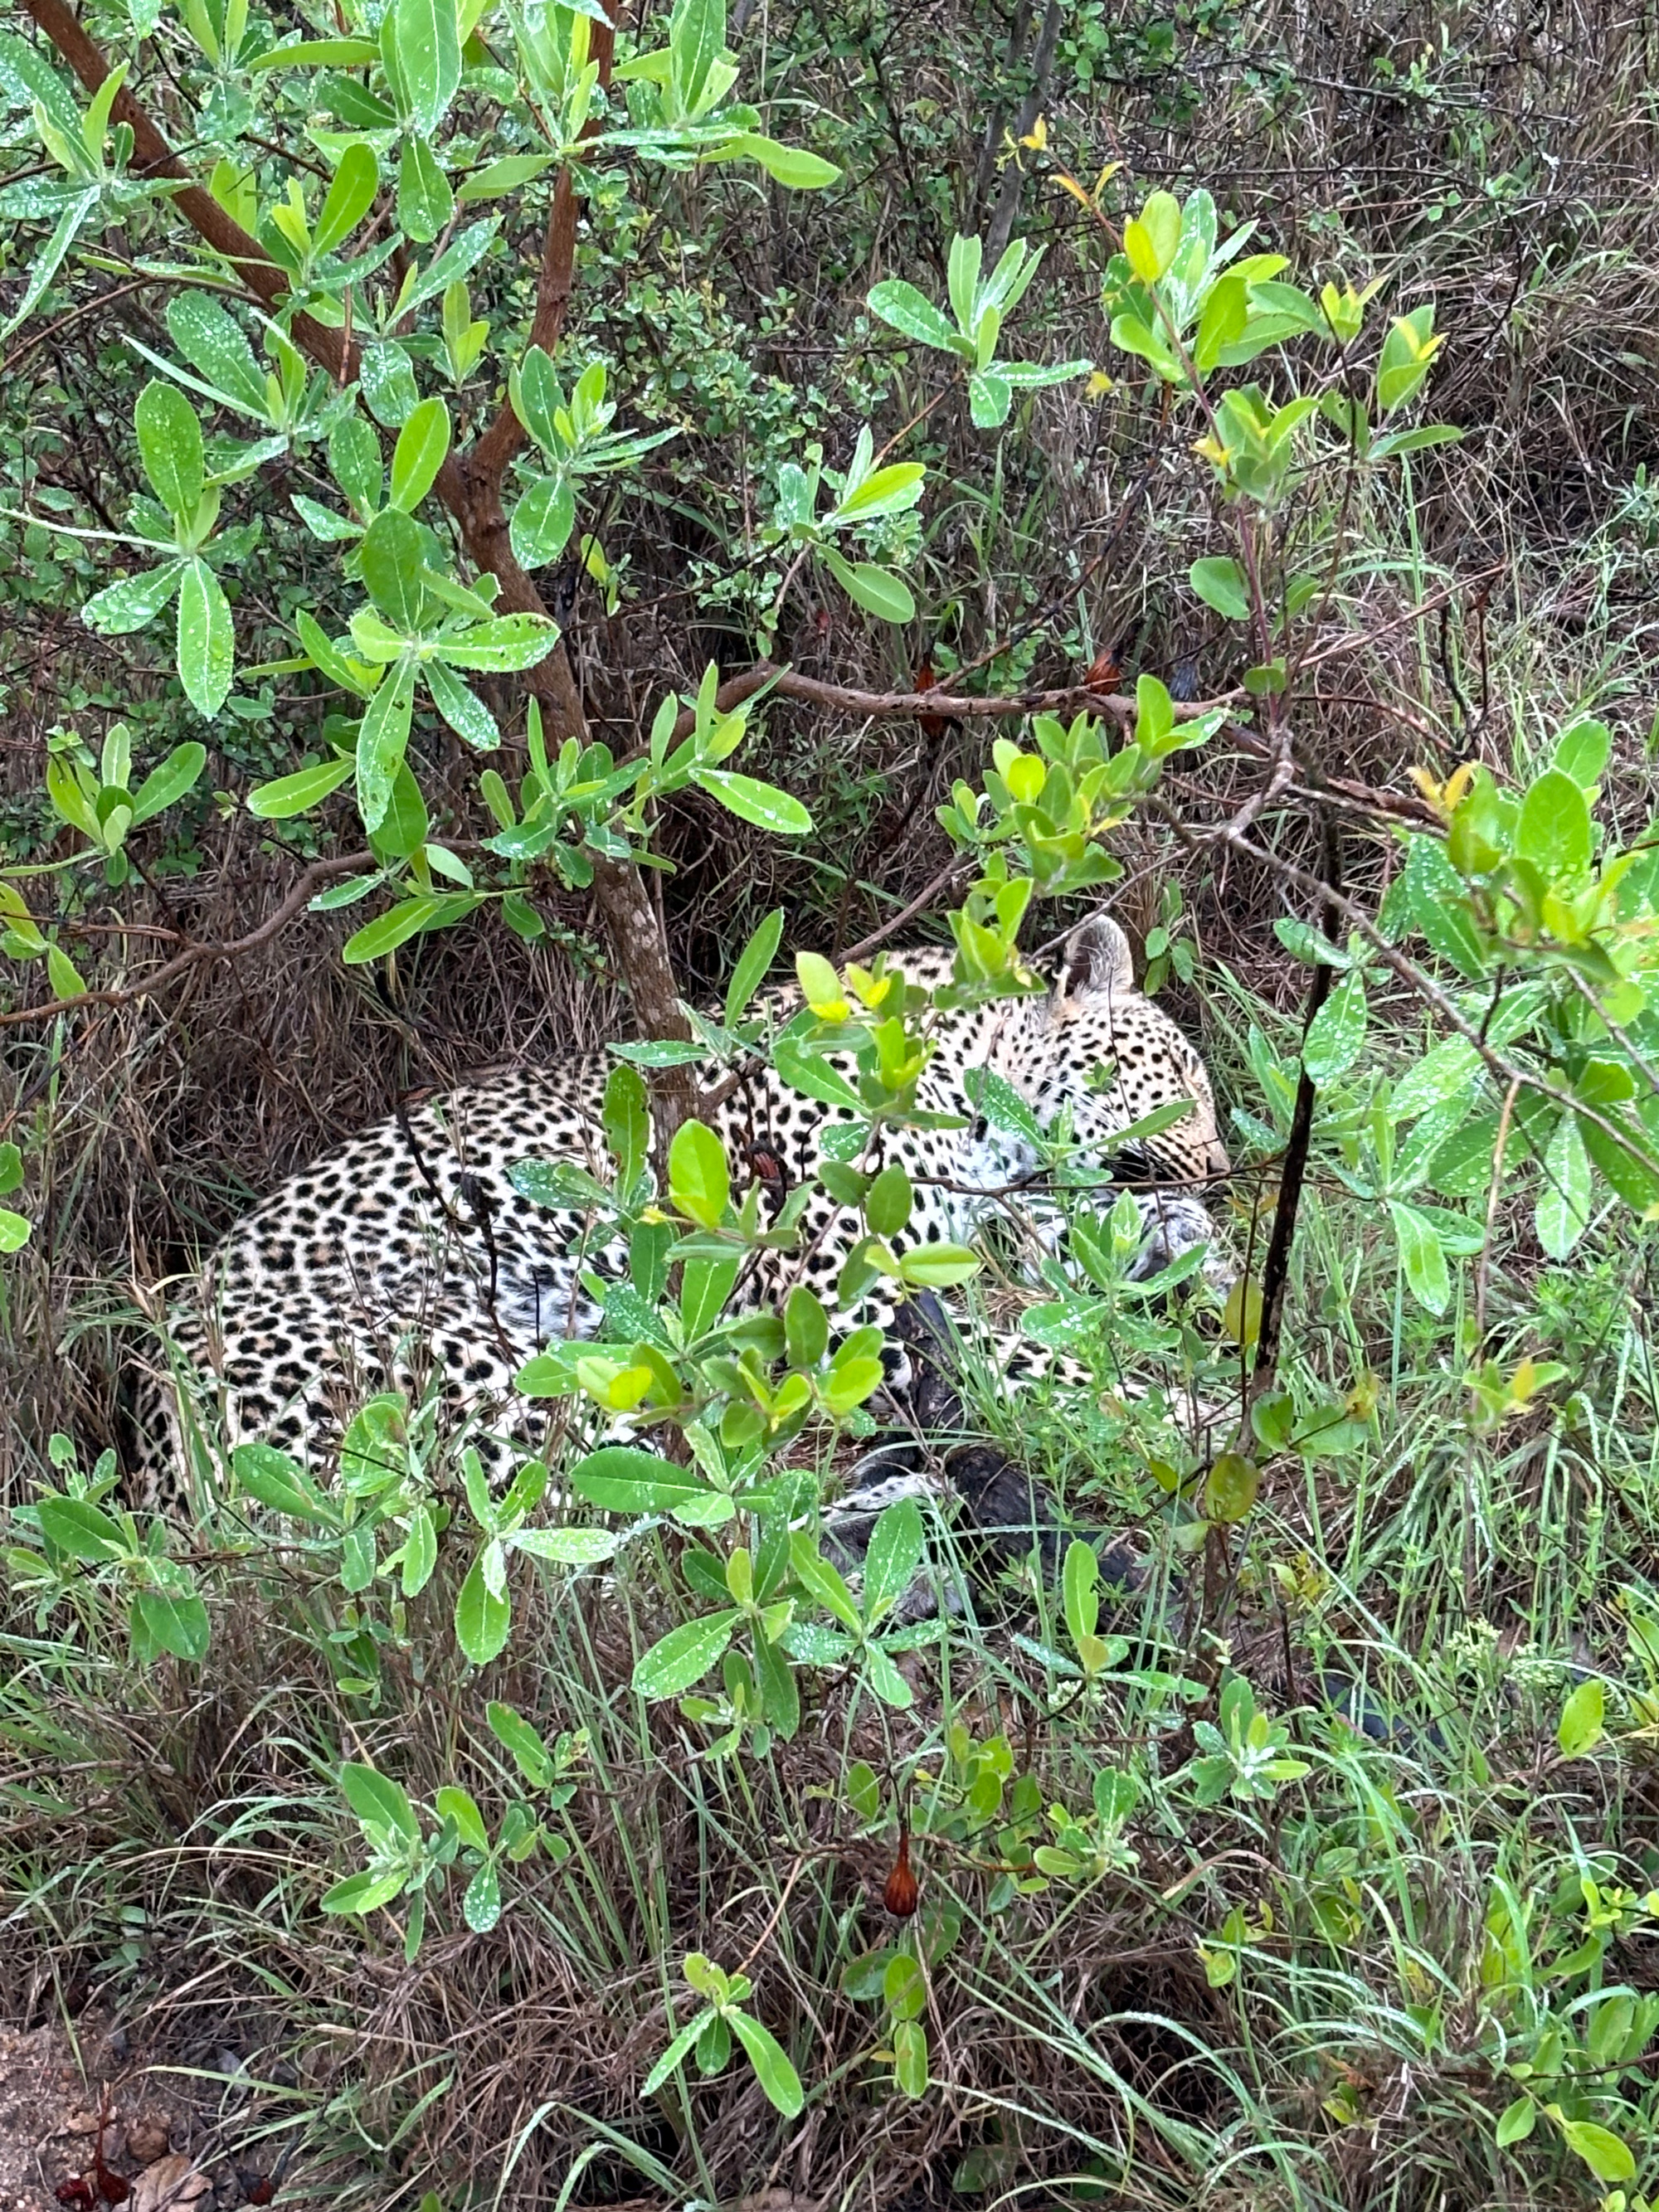 Leopard på safari i Sydafrika.